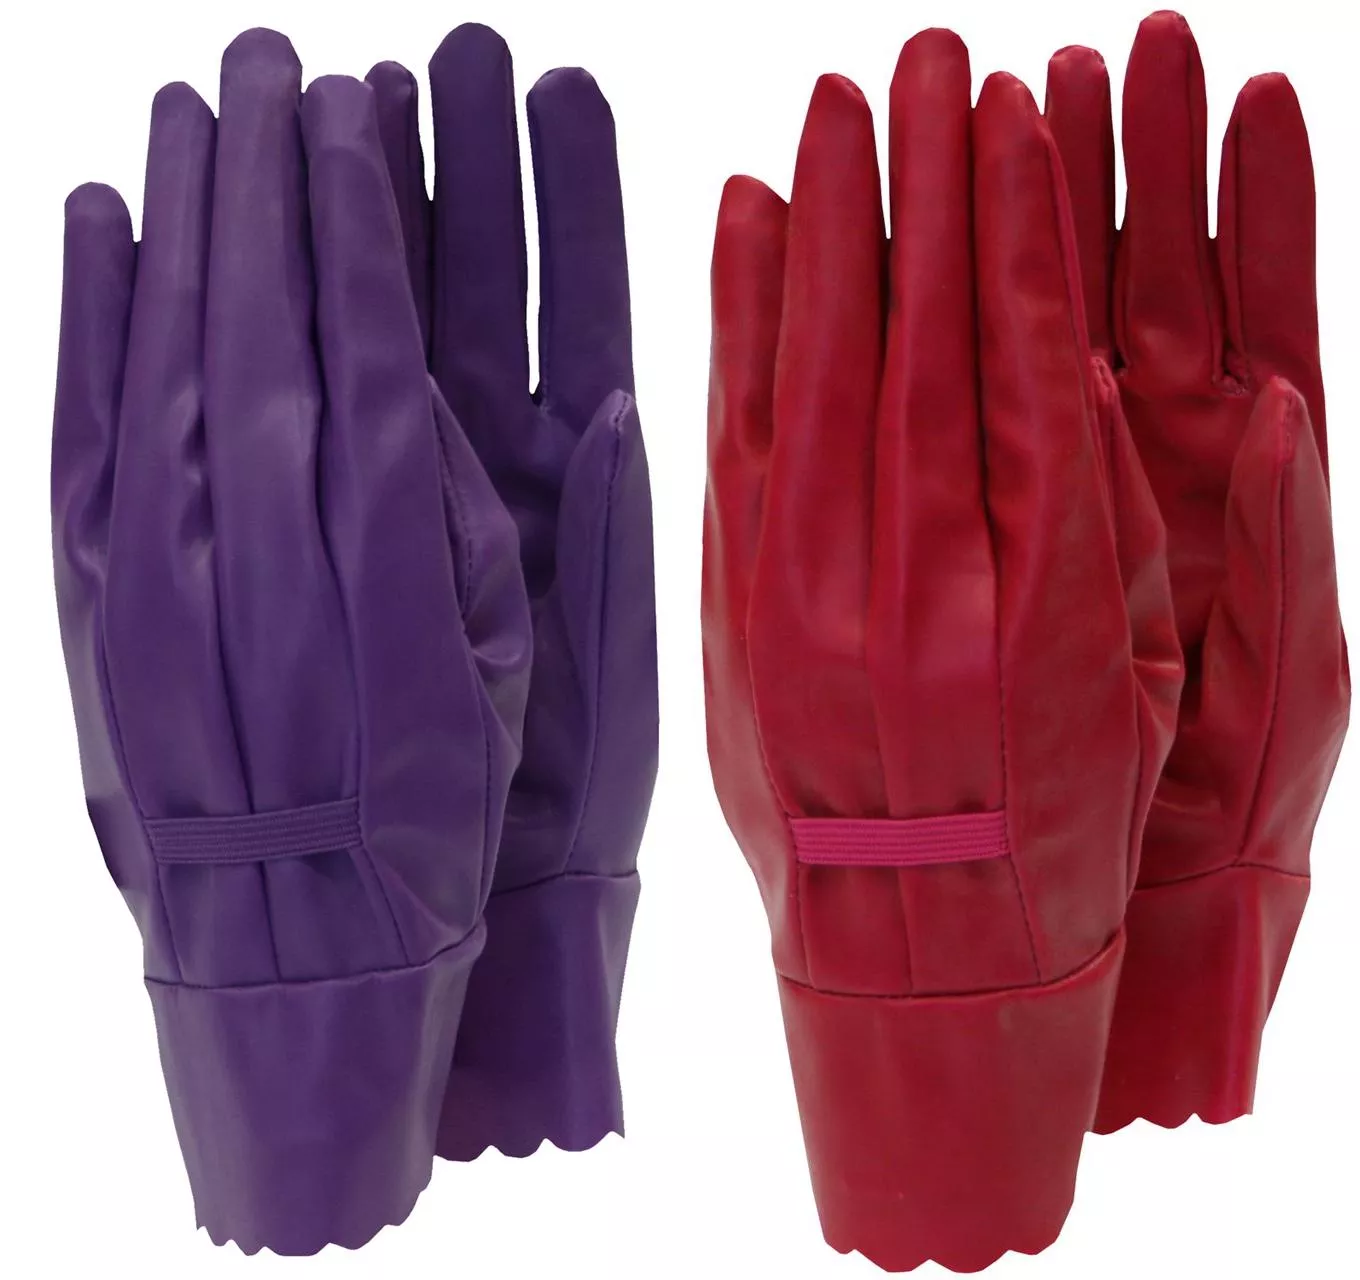 Ladies Aquasure Vinyl Gloves 206